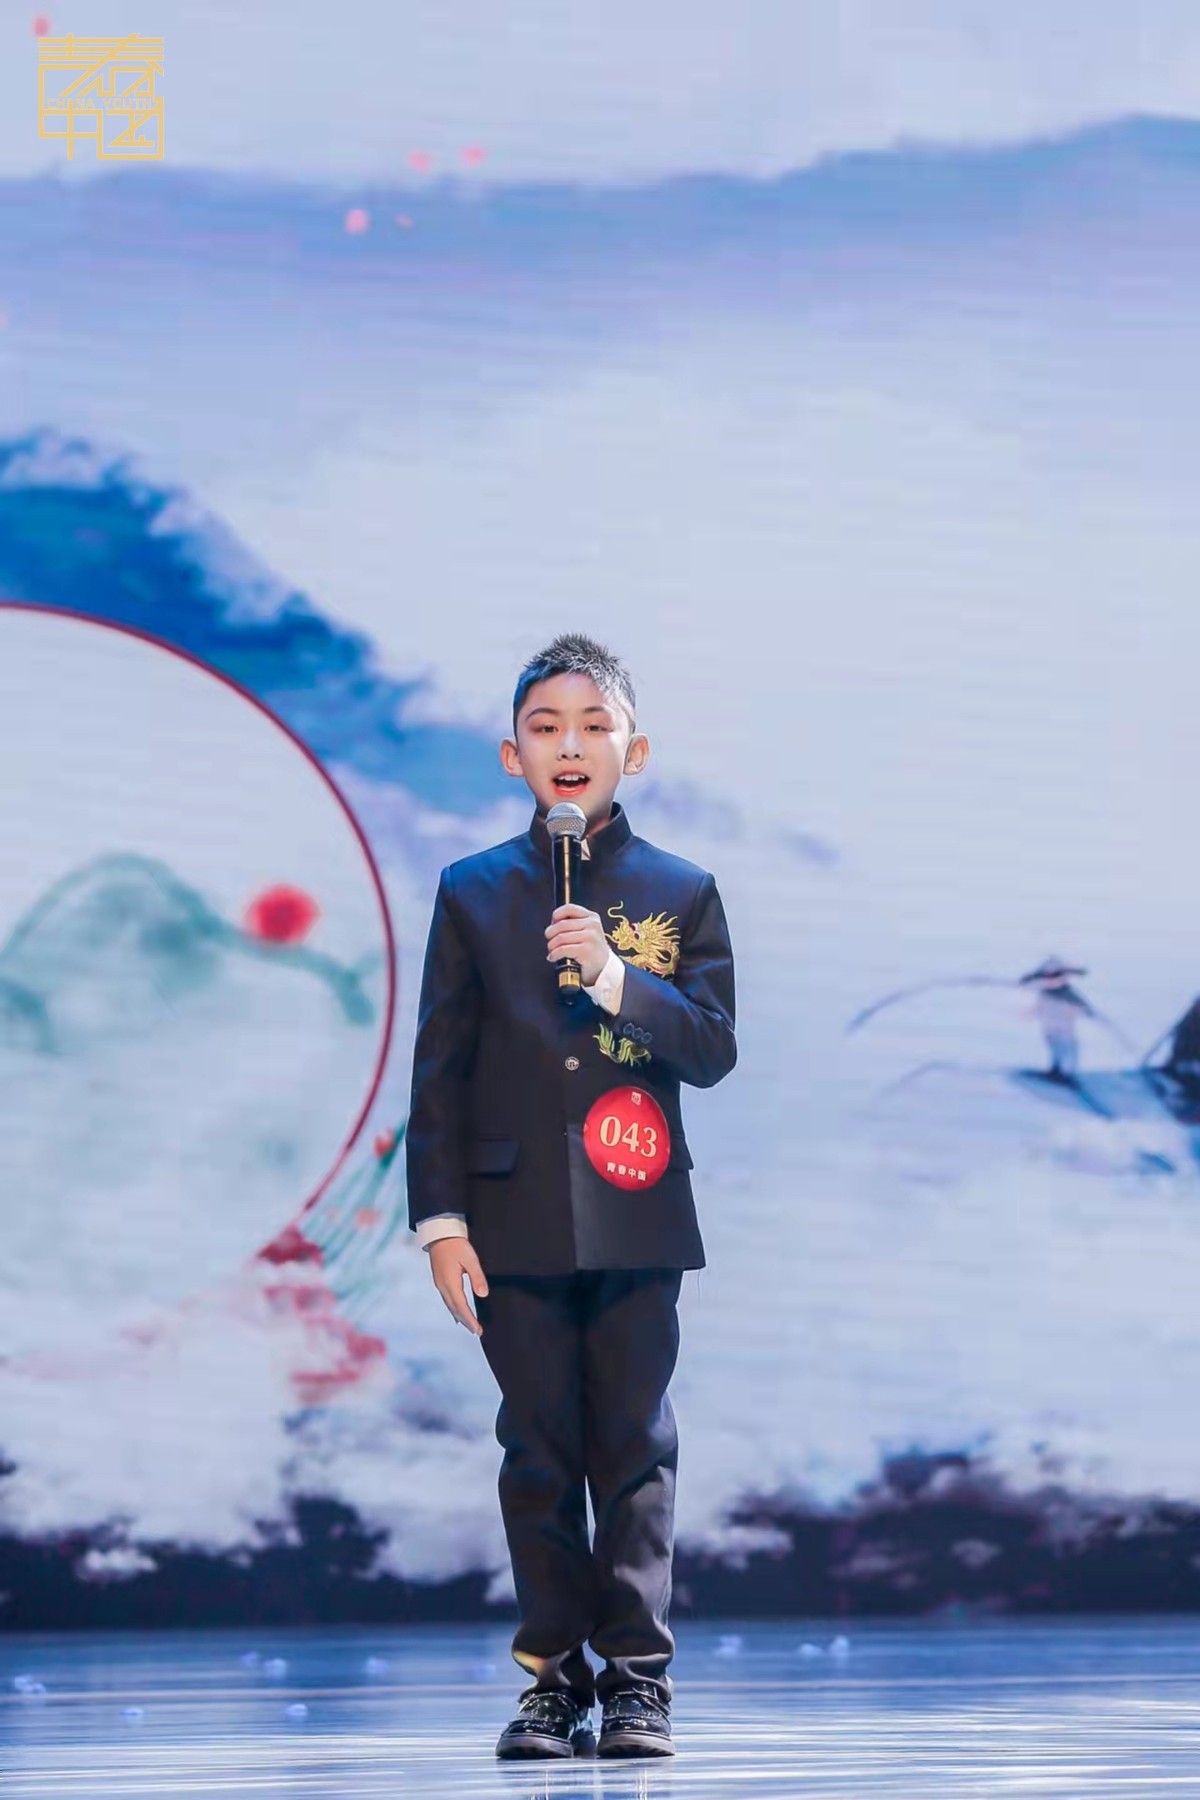 青春中国·第十七届青少年艺术素质教育展评太原赛区圆满成功